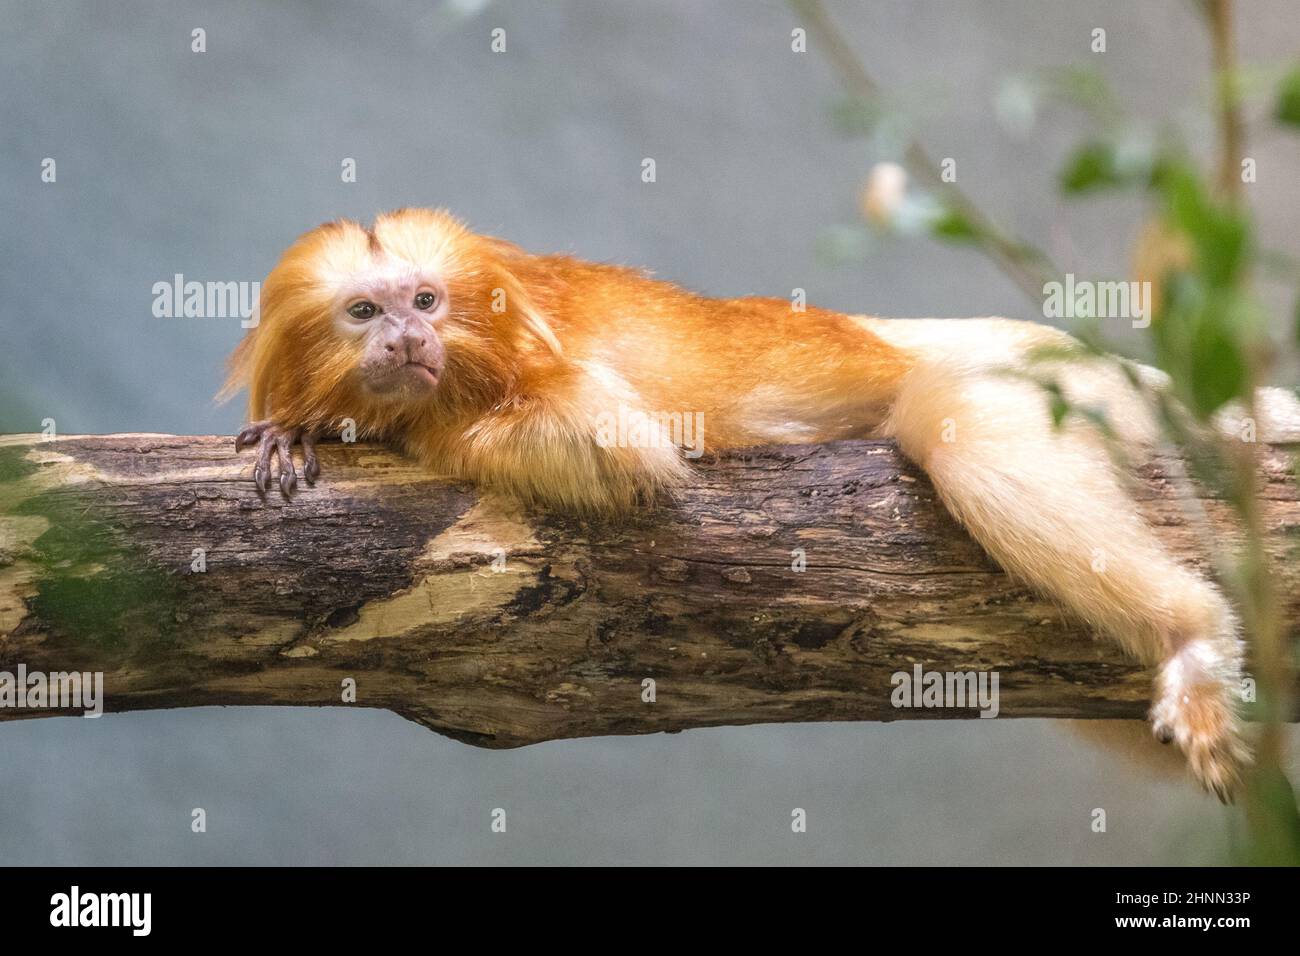 The golden lion tamarin (Leontopithecus rosalia), also known as the golden marmoset monkey. Stock Photo